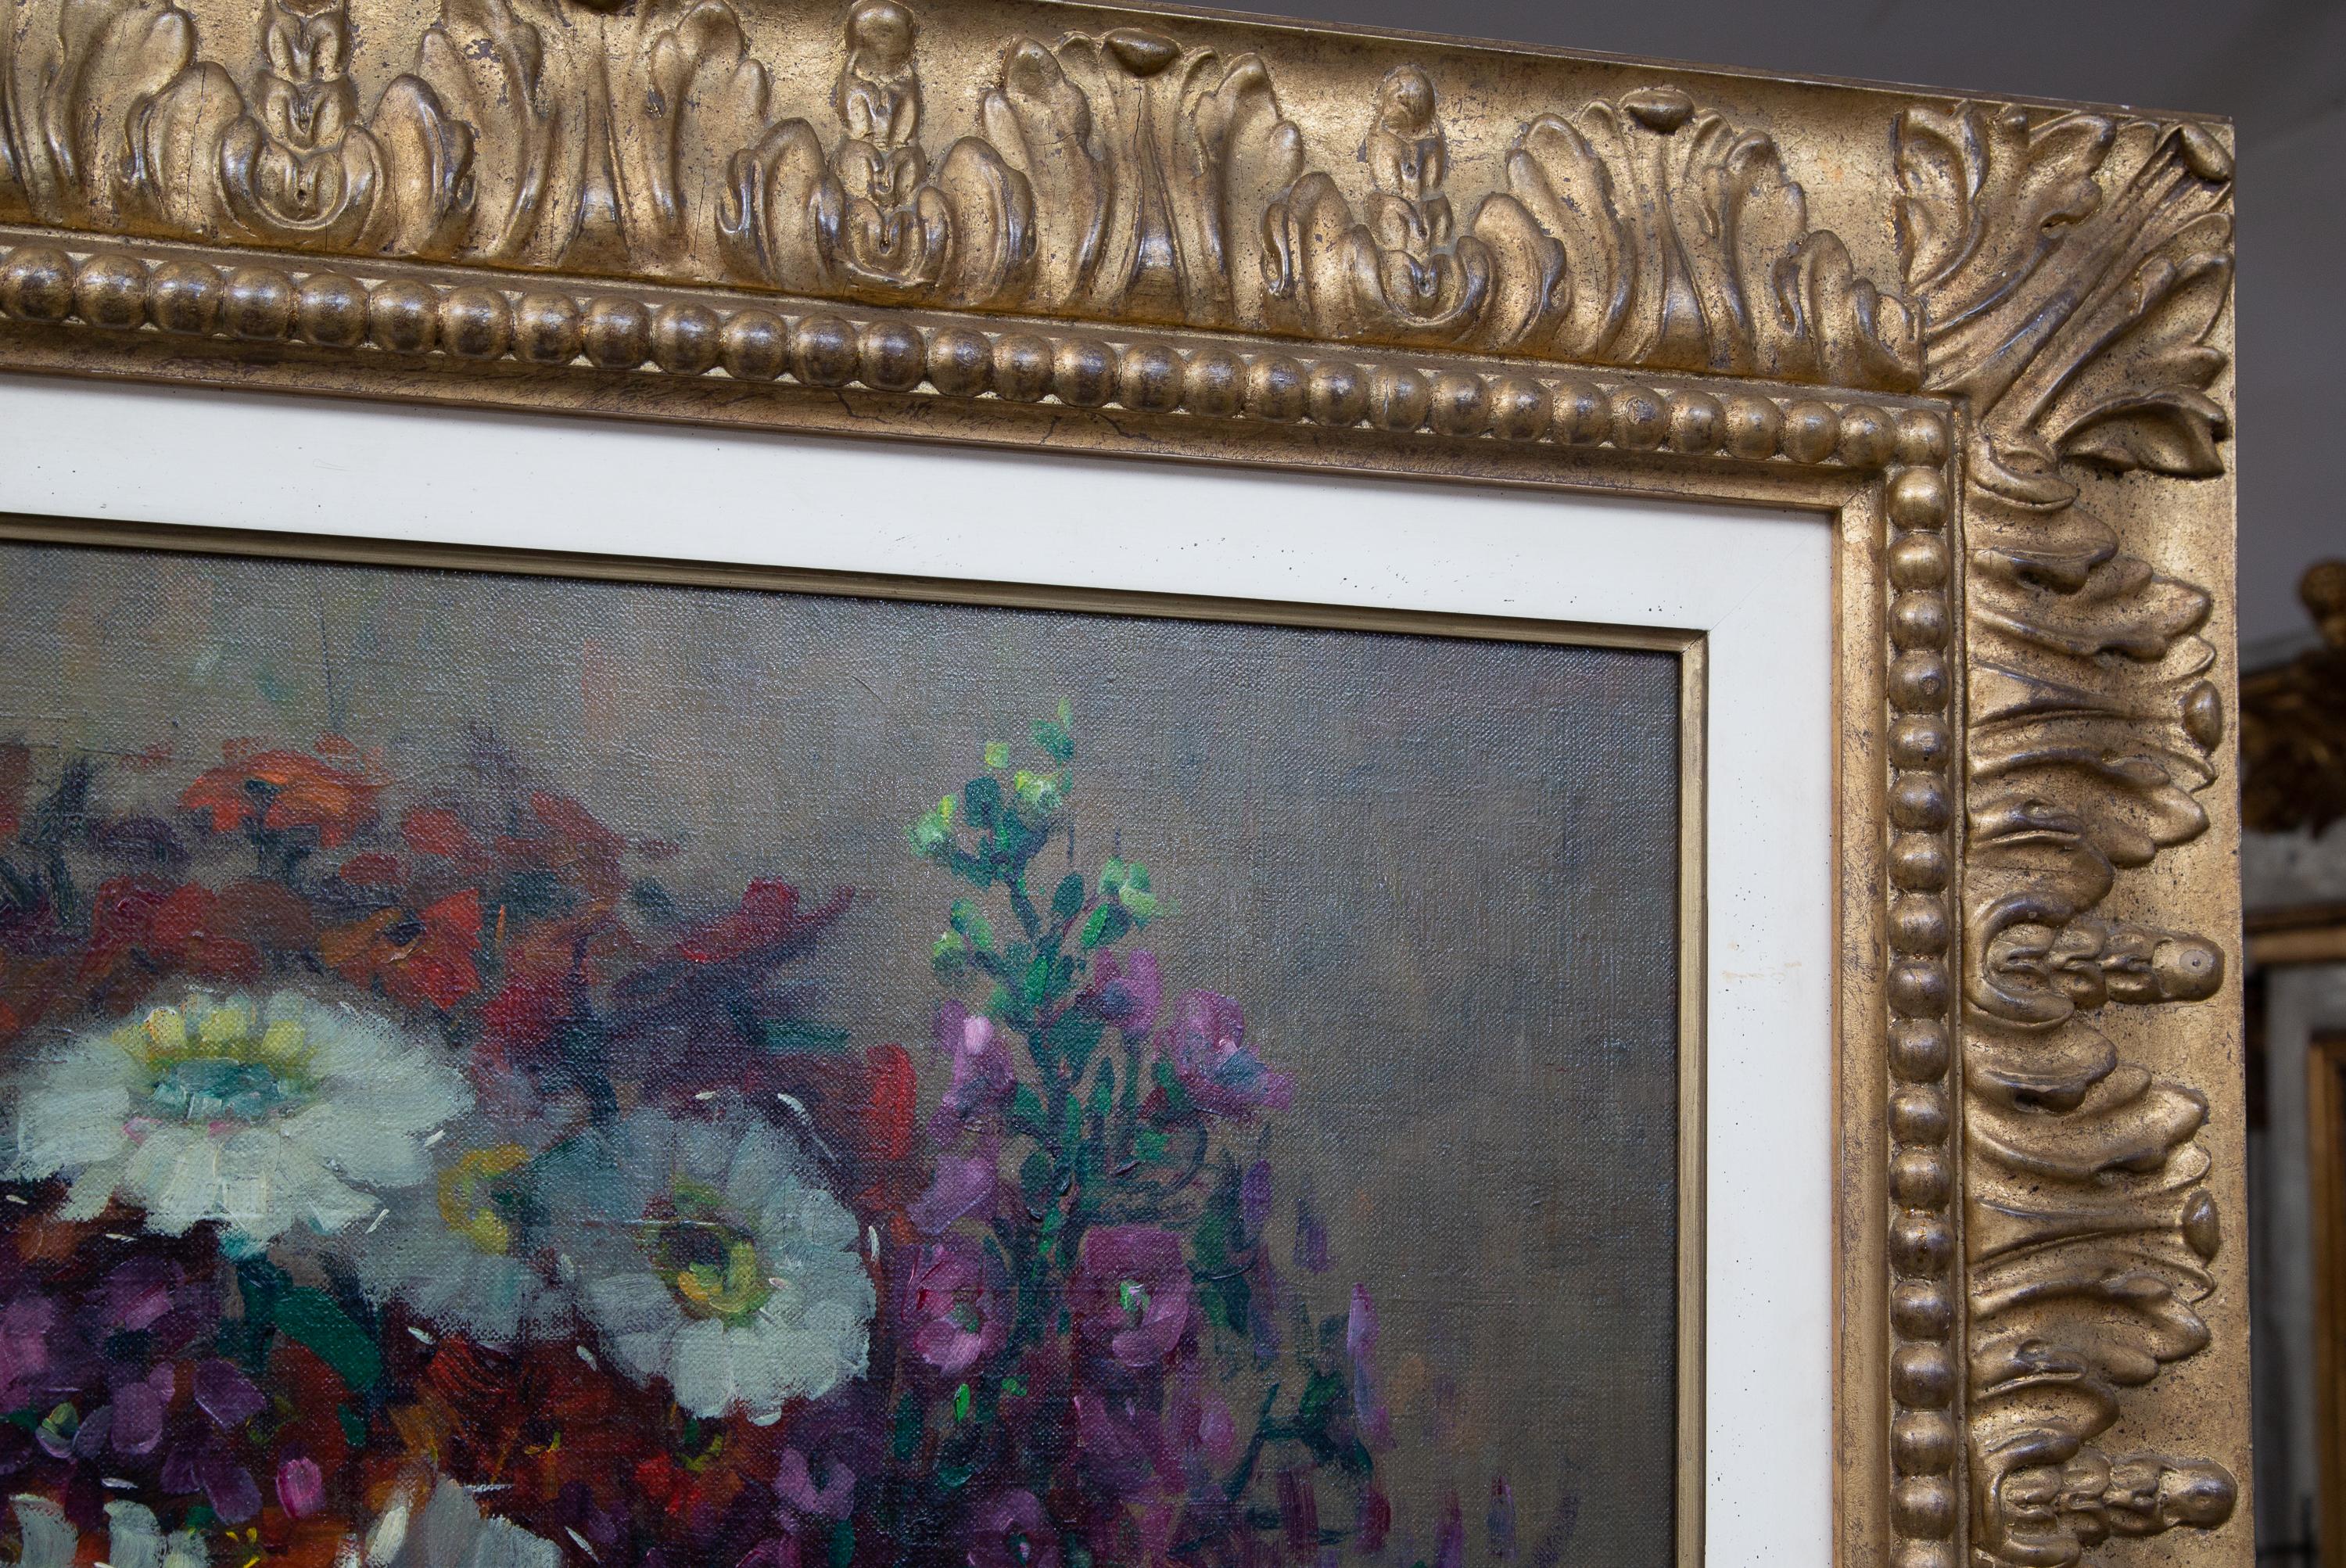 Frans Roofhooft (1888-1957), un artiste belge, est connu pour ses natures mortes florales et ses paysages. Cette peinture est un exemple classique de son travail. La peinture à l'huile représente une profusion de fleurs dans un bol

Frans est le